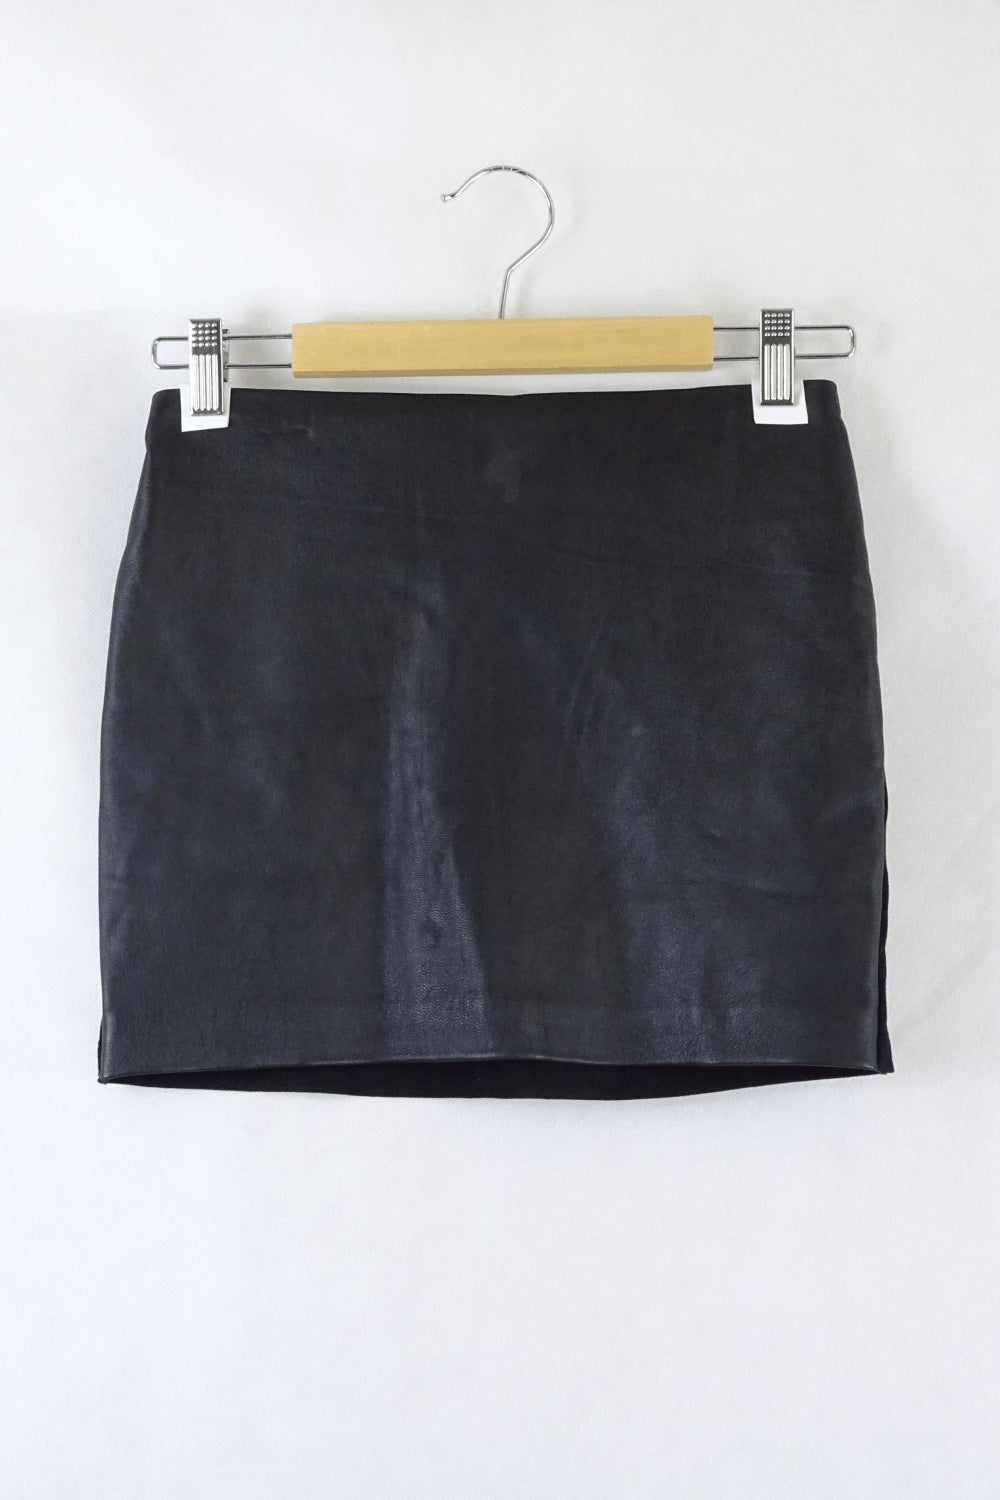 Origen Black Leather Skirt S